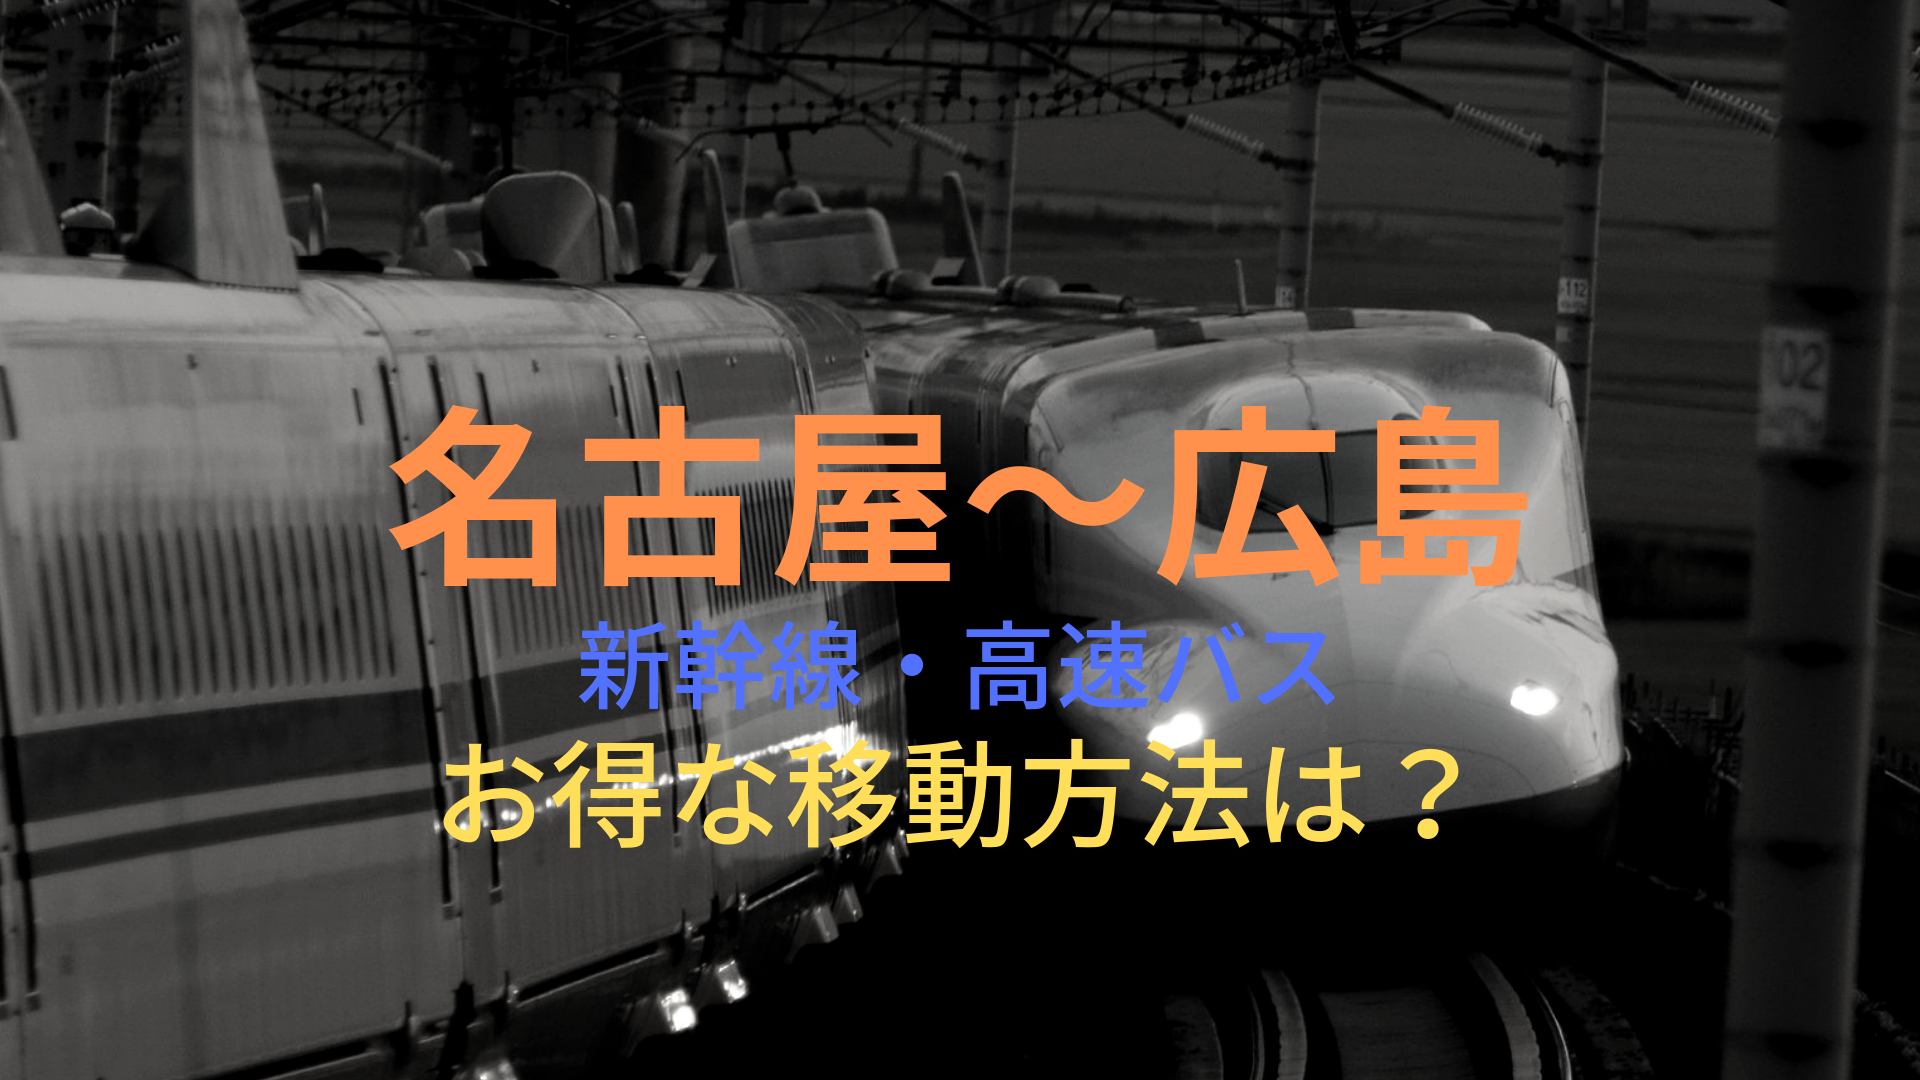 名古屋 広島 50円 格安で移動する方法は 新幹線 高速バスをそれぞれ比較 ばしたく交通